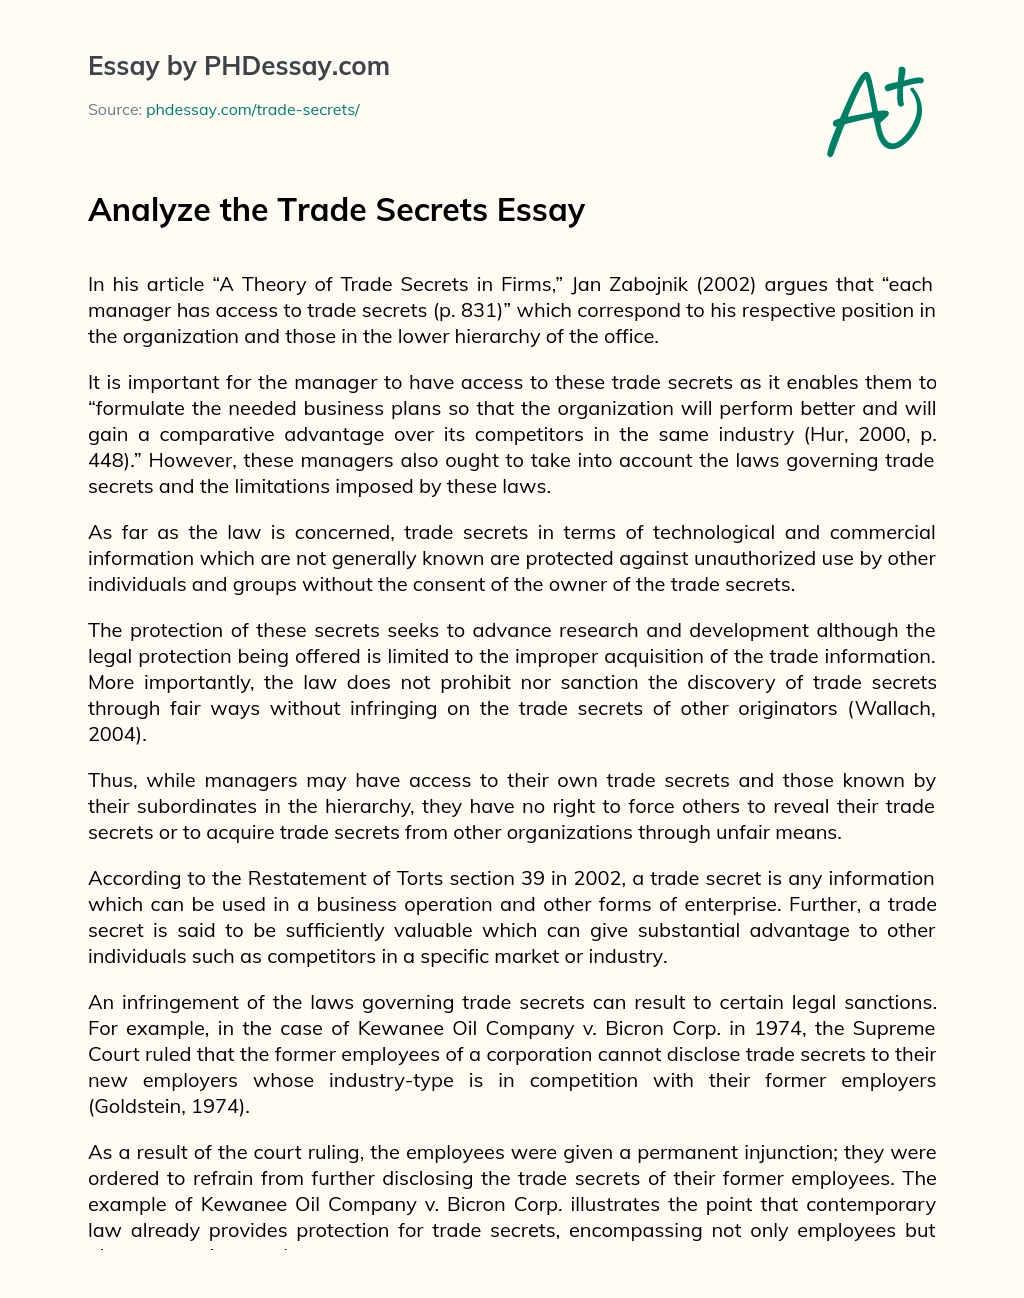 Analyze the Trade Secrets Essay essay